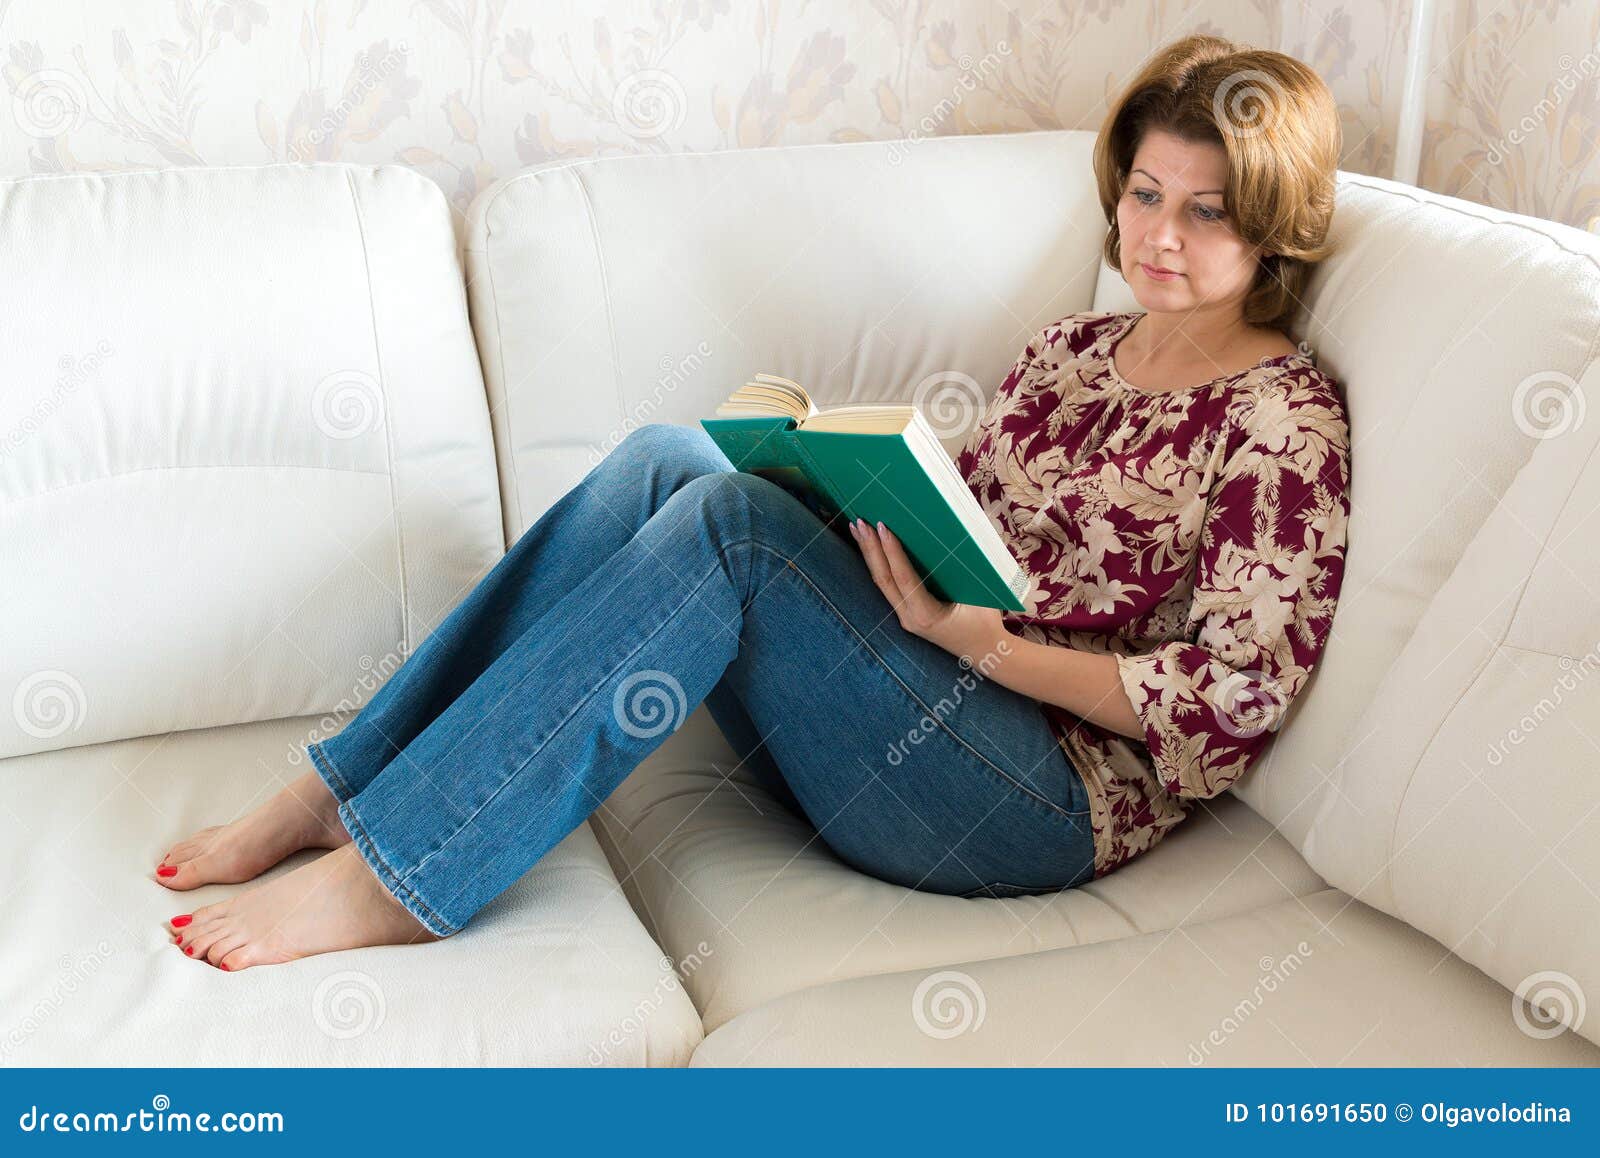 Мама сидит в кресле. Женщина на диване. Женщина лежит на диване. Женщина сидит на диване. Женщина сидит на диване с книжкой.